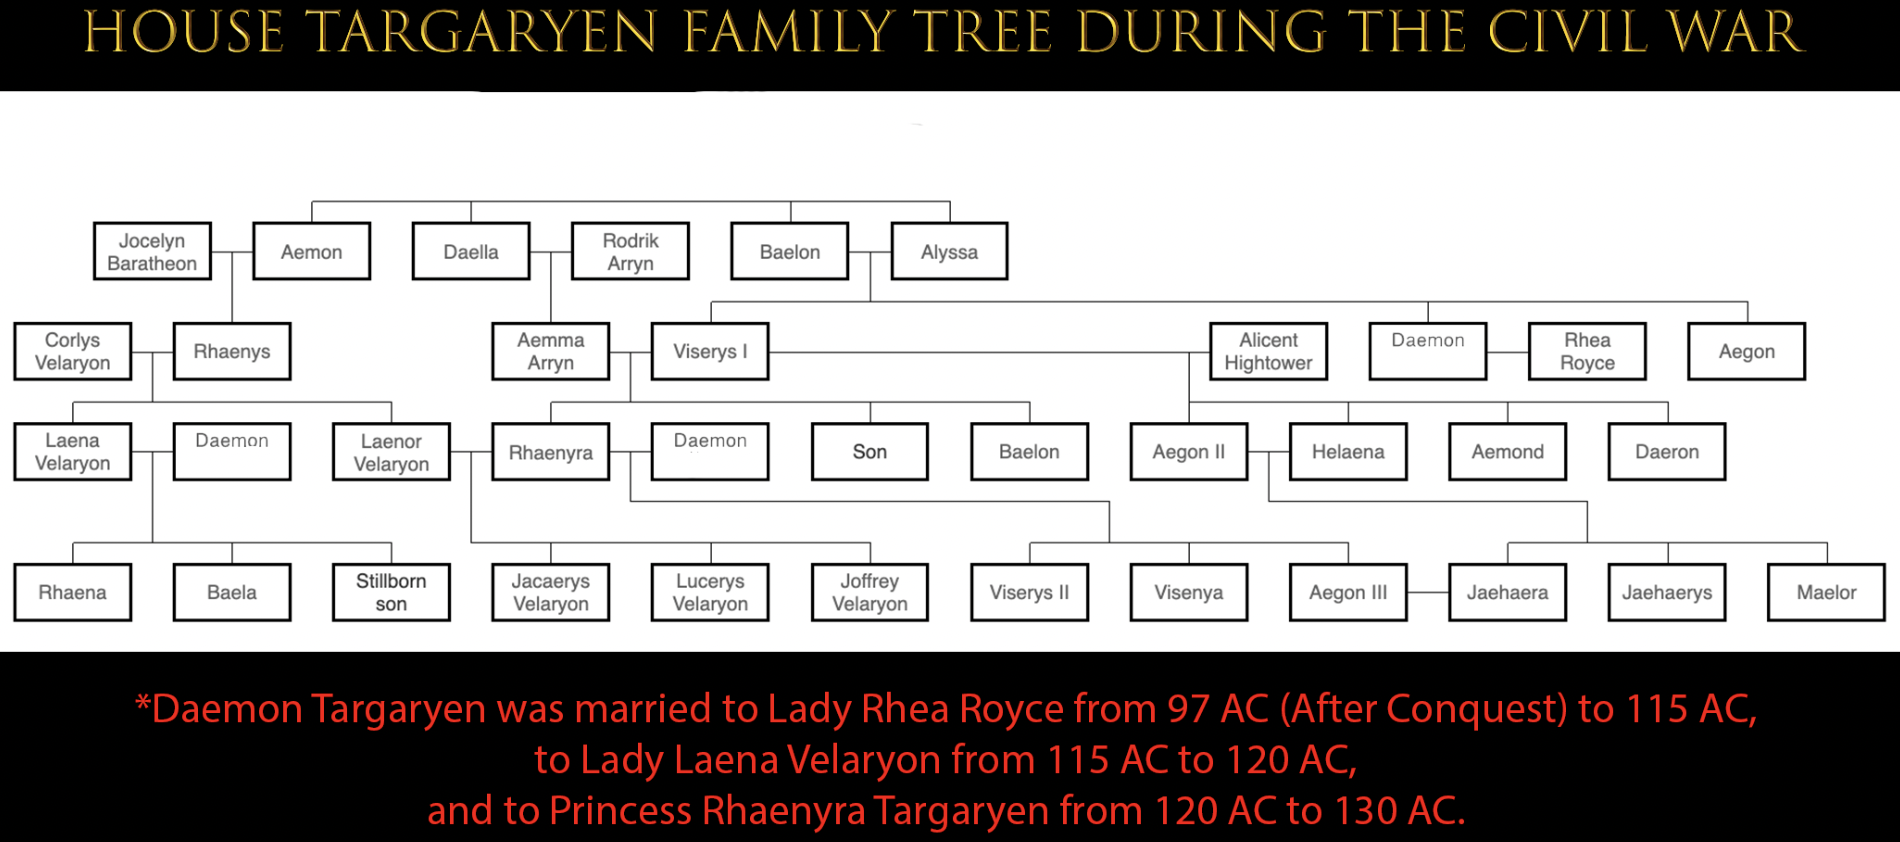 The Targaryen Family Tree